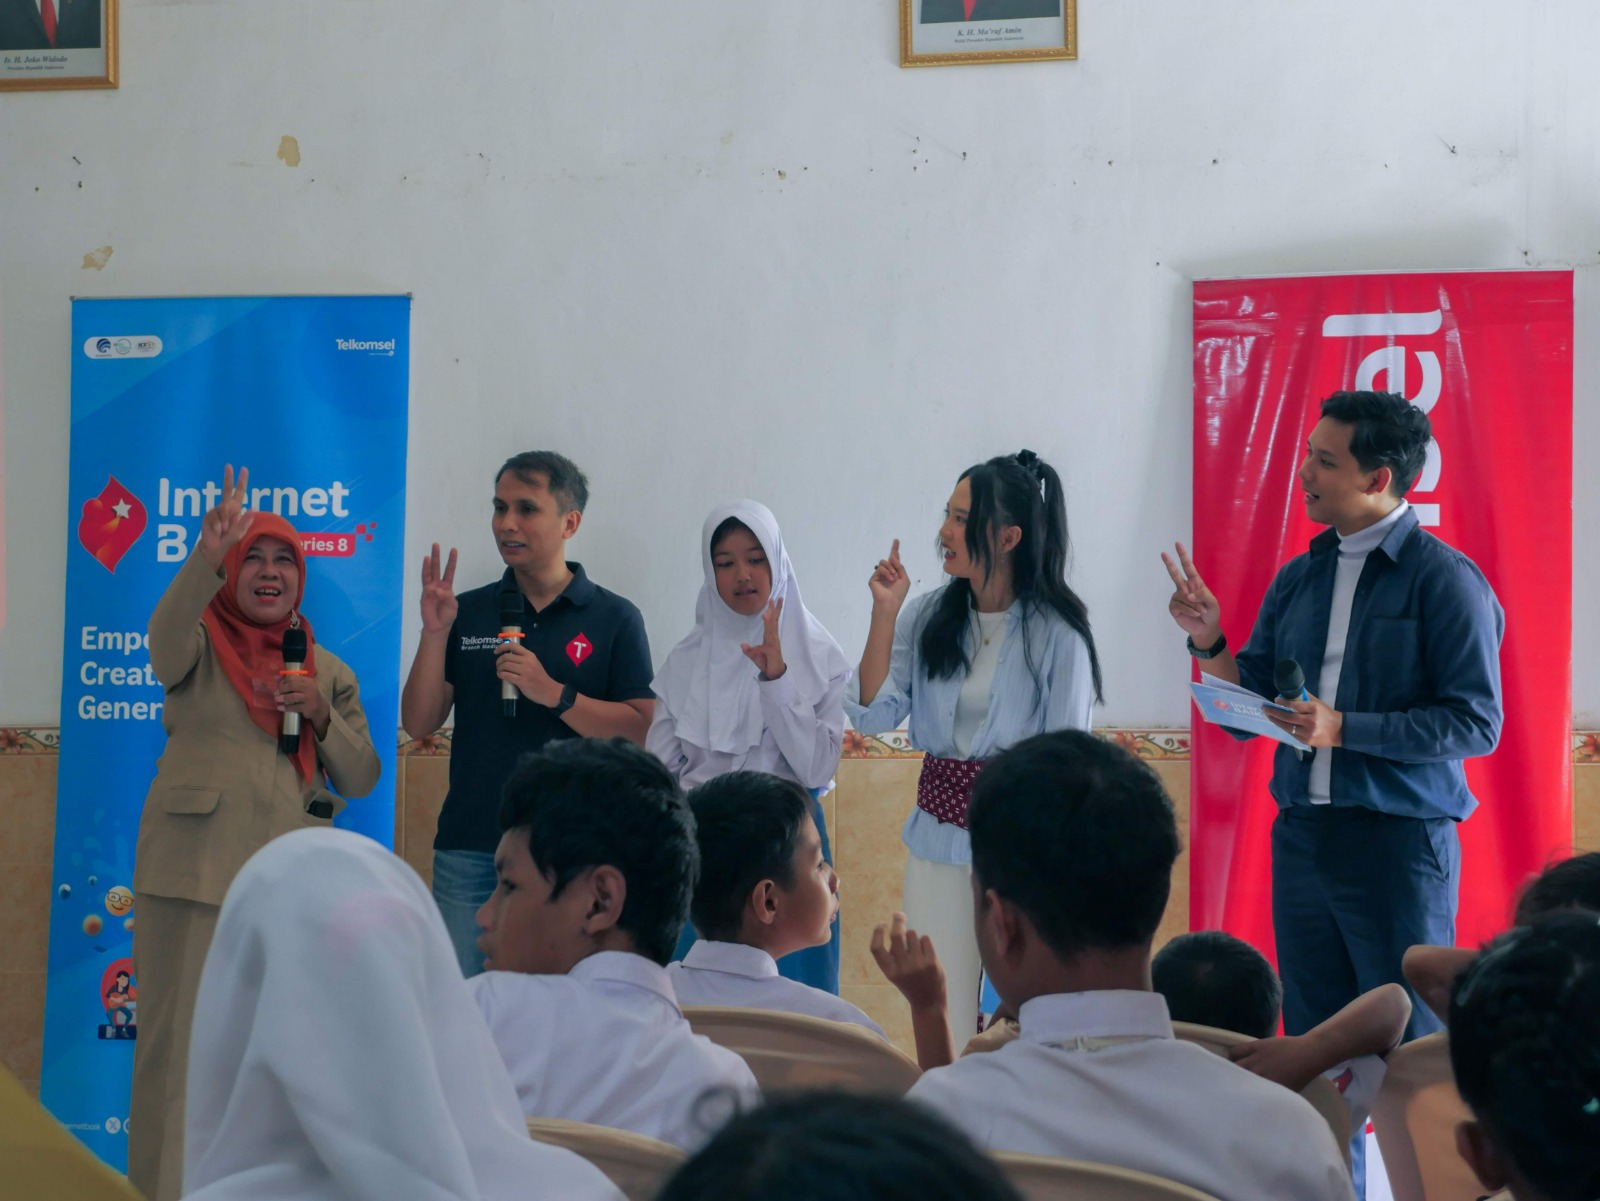 Internet Baik Series 8 Telkomsel, Tingkatkan Literasi Digital 1.000 Pelajar dan Guru di Indonesia